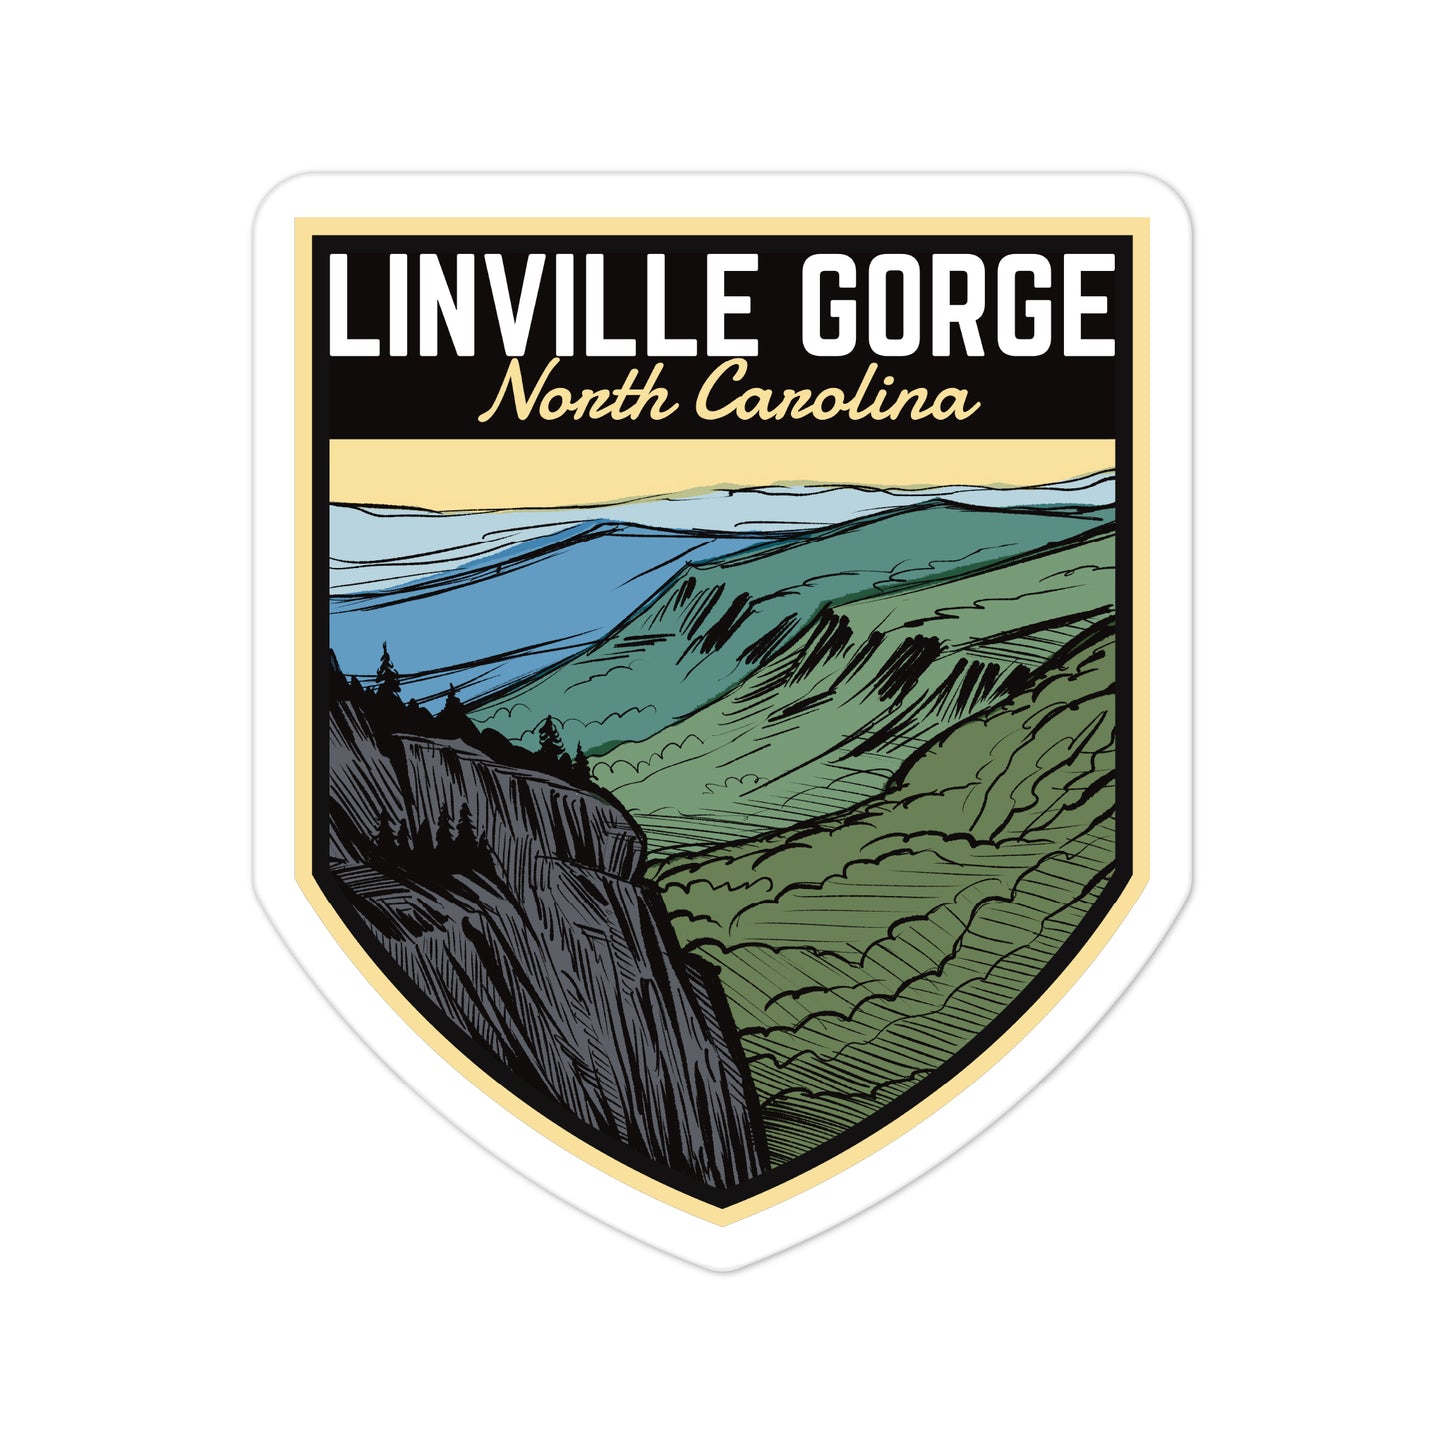 A sticker of Linville Gorge North Carolina